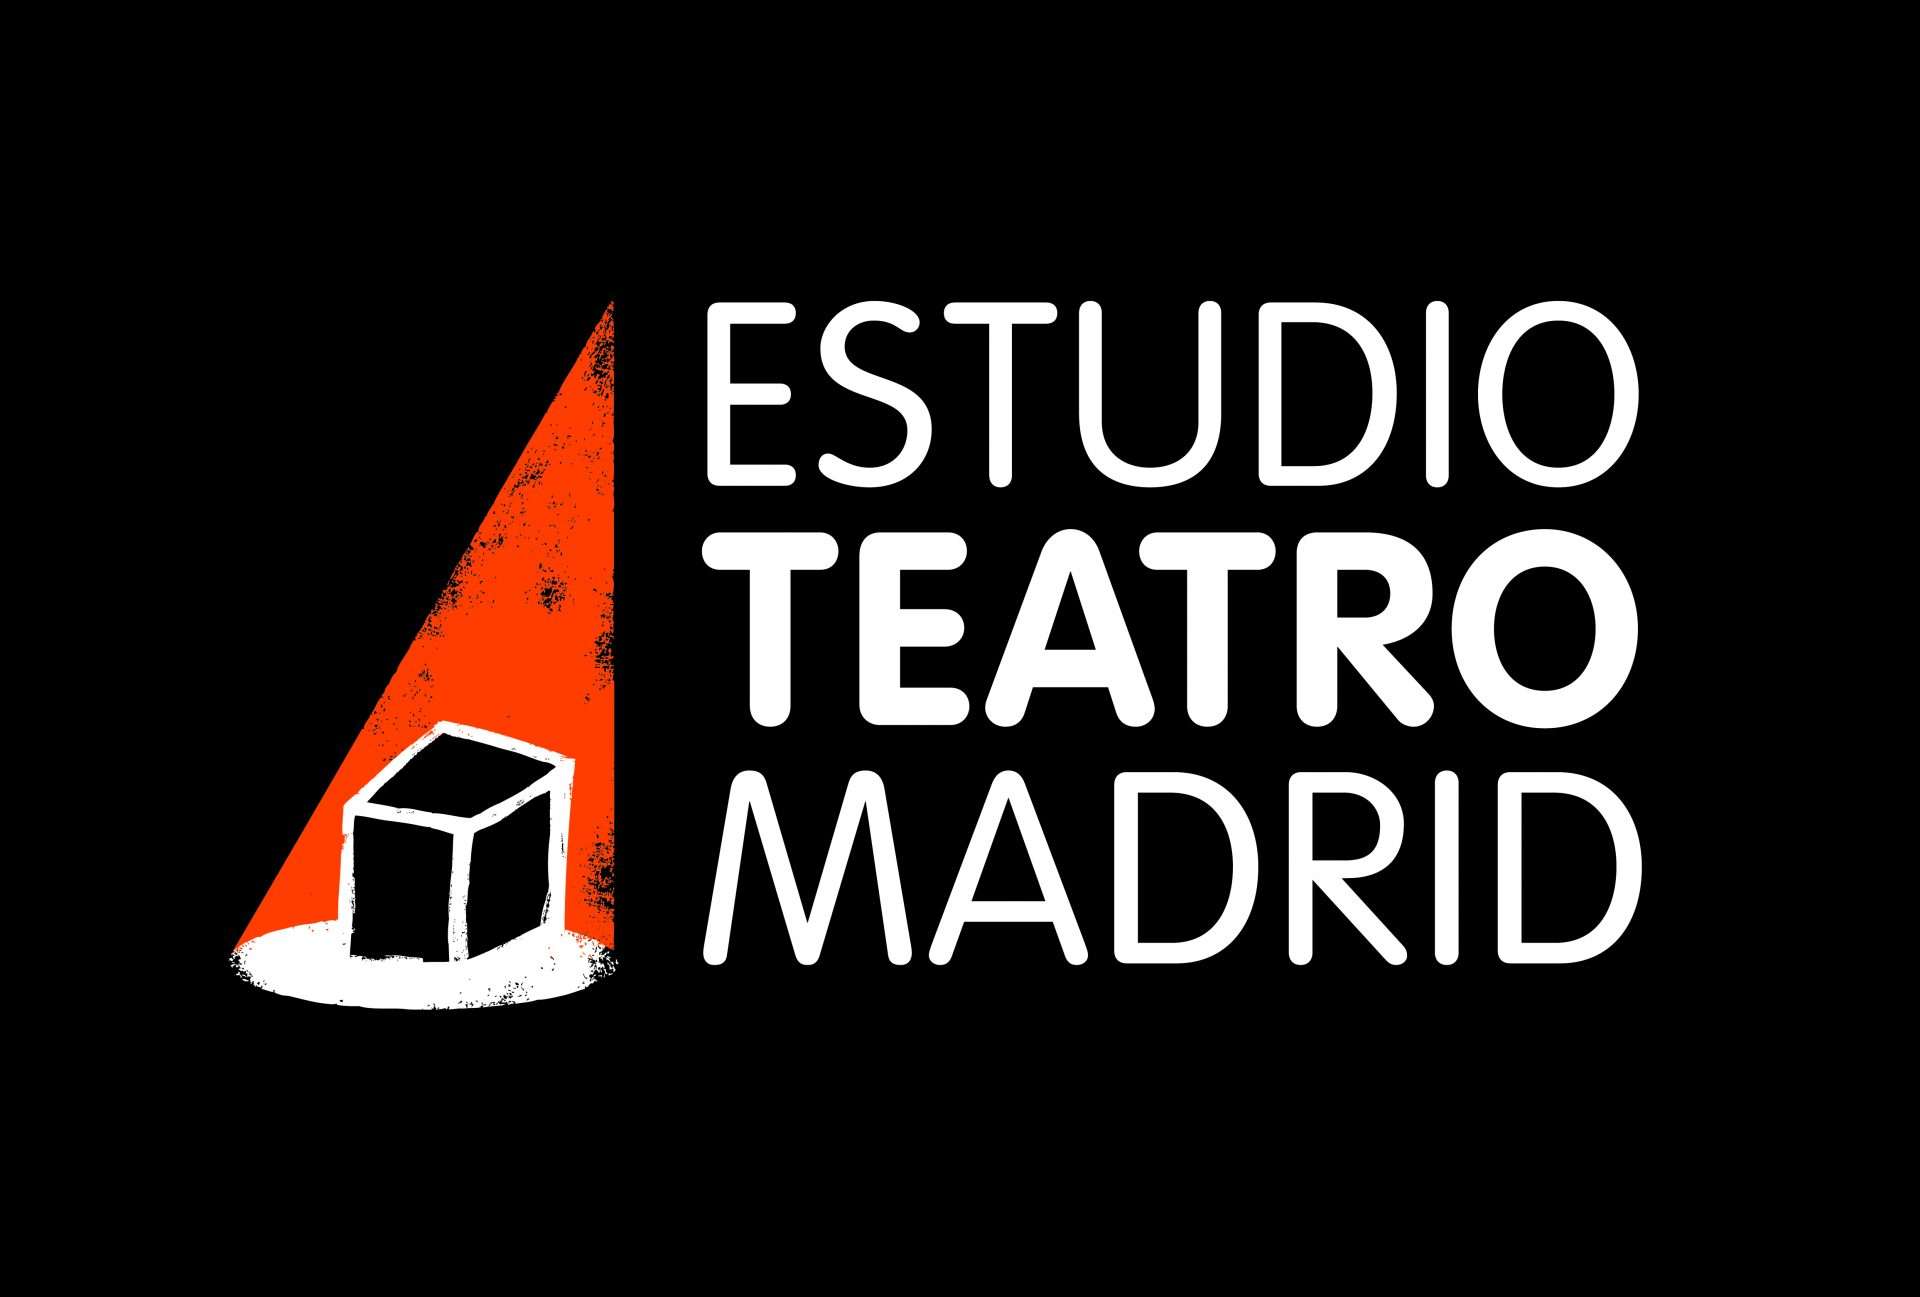 ESTUDIO TEATRO MADRID